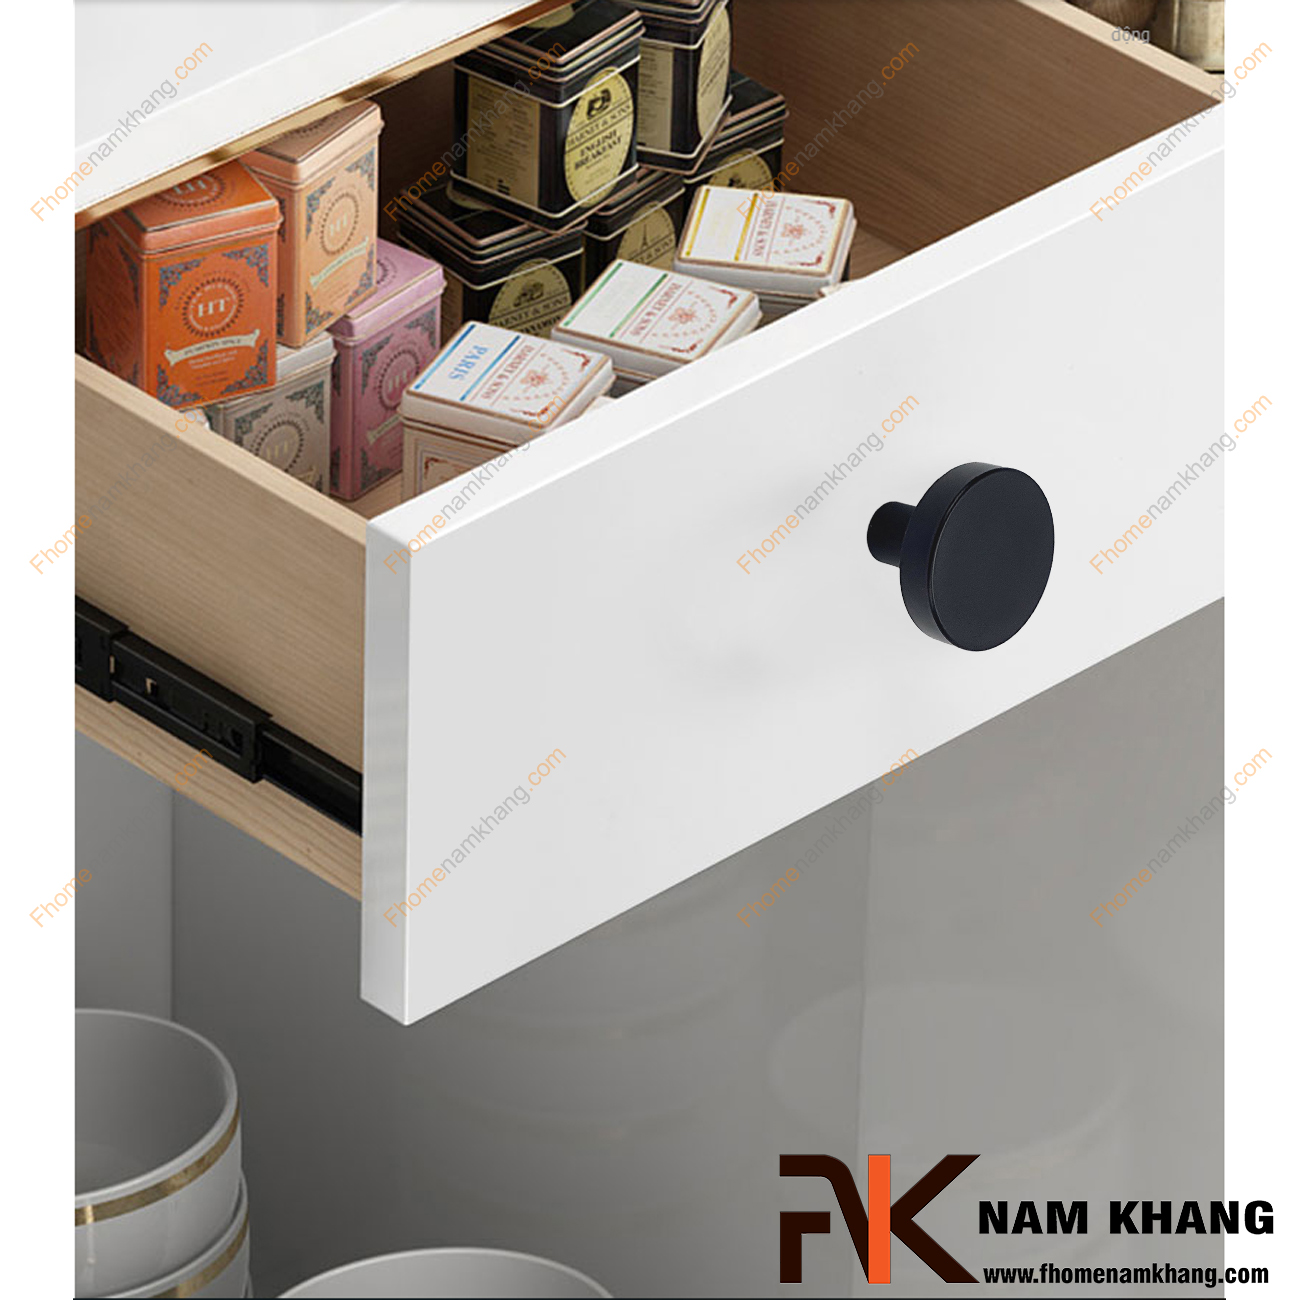 Núm cửa tủ dạng tròn trơn đen mờ NK267-ND - Một thiết kế rất đơn giản, một chất liệu chất lượng cao, một sản phẩm đáp ứng được tất cả các tiêu chí nội thất. 